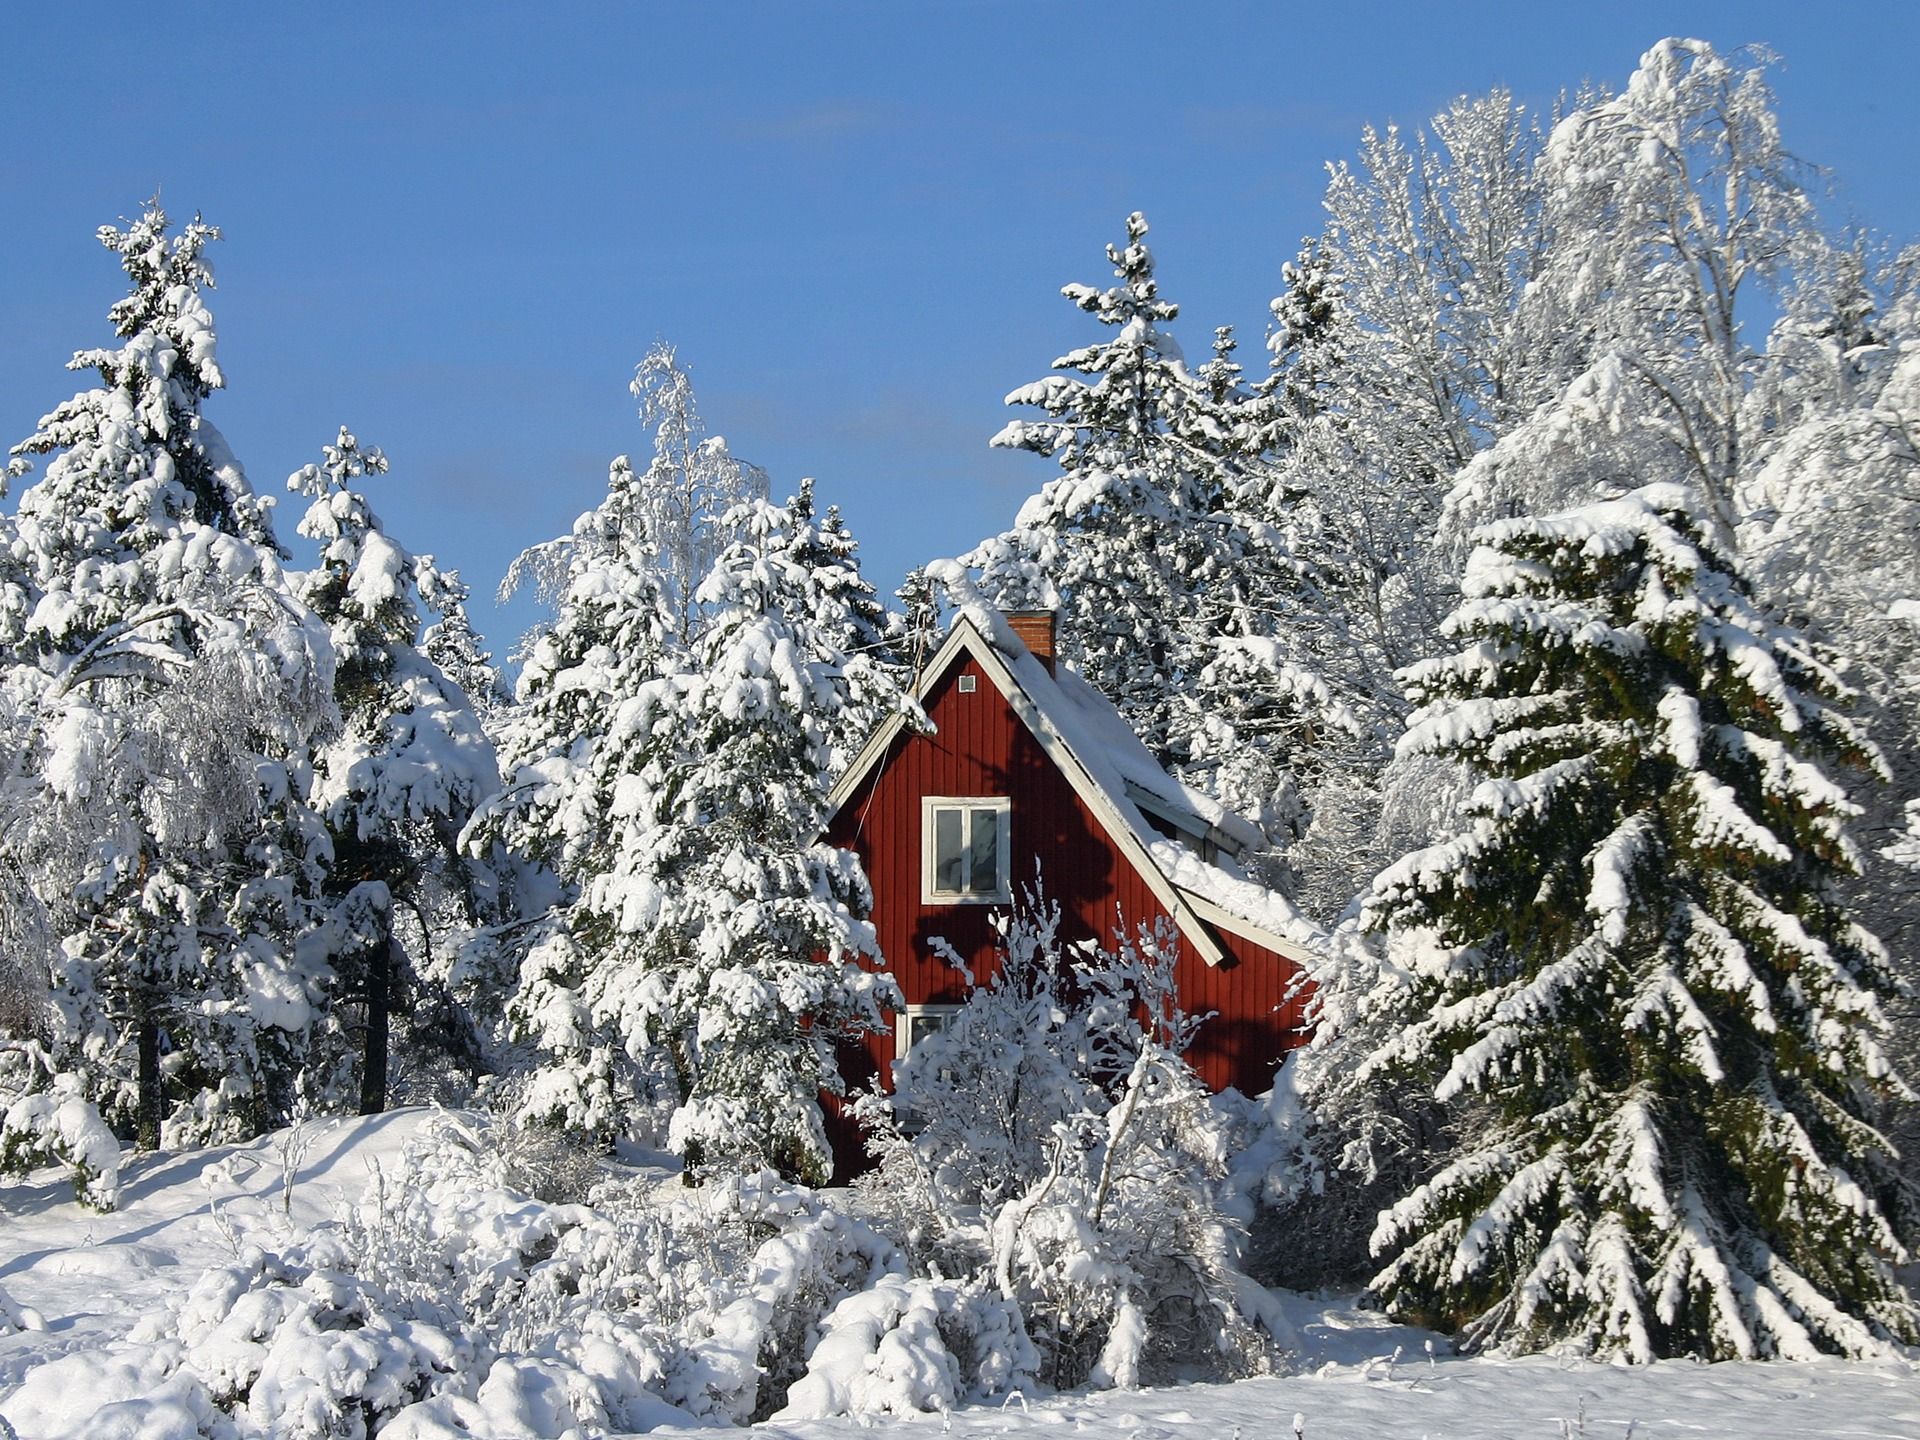 تازه ترین عکس پروفایل خانه قرمز رنگ برفی در اسکاندیناوی	